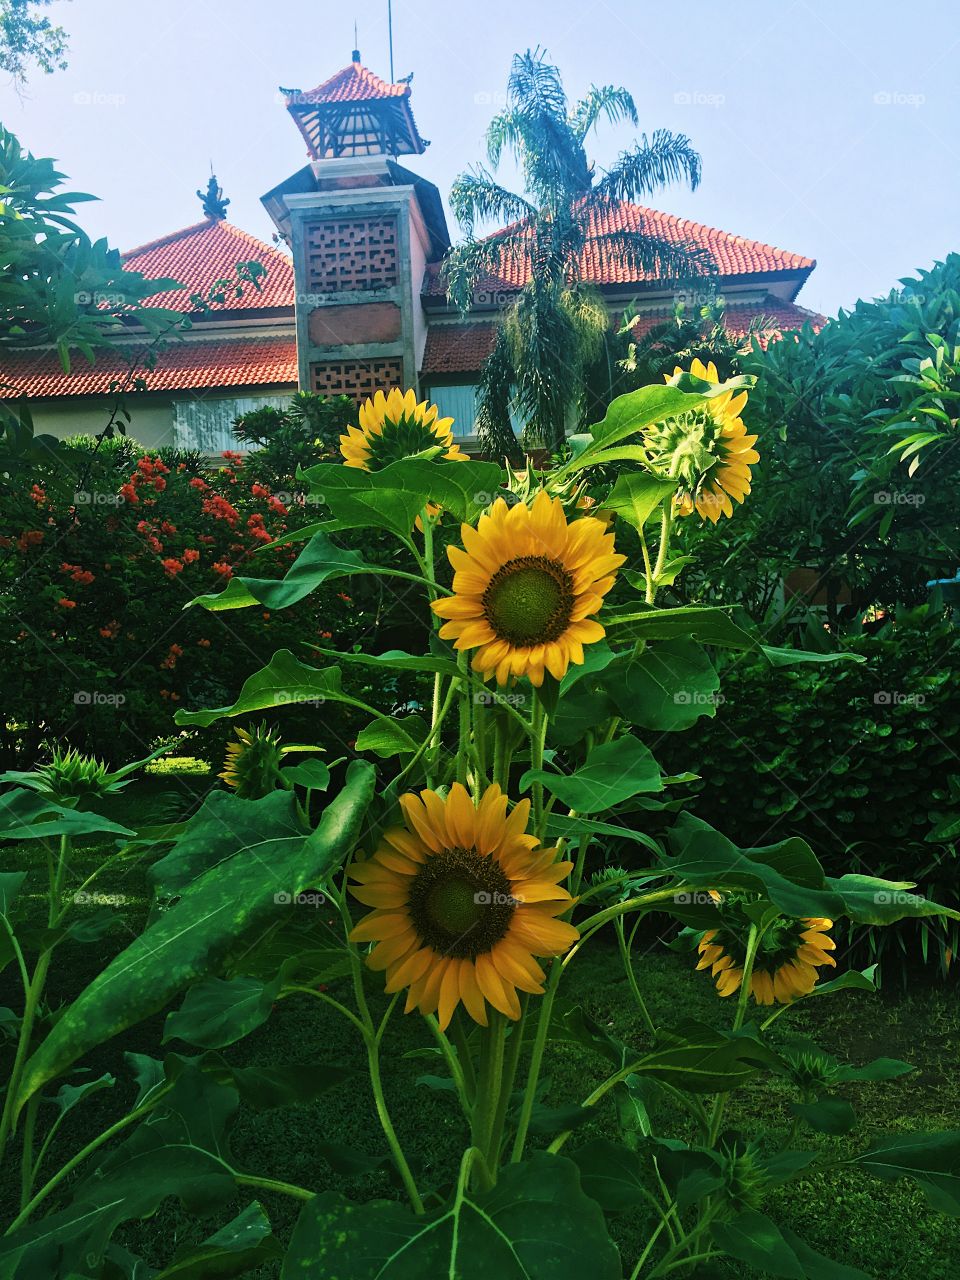 Sunflowers in resort